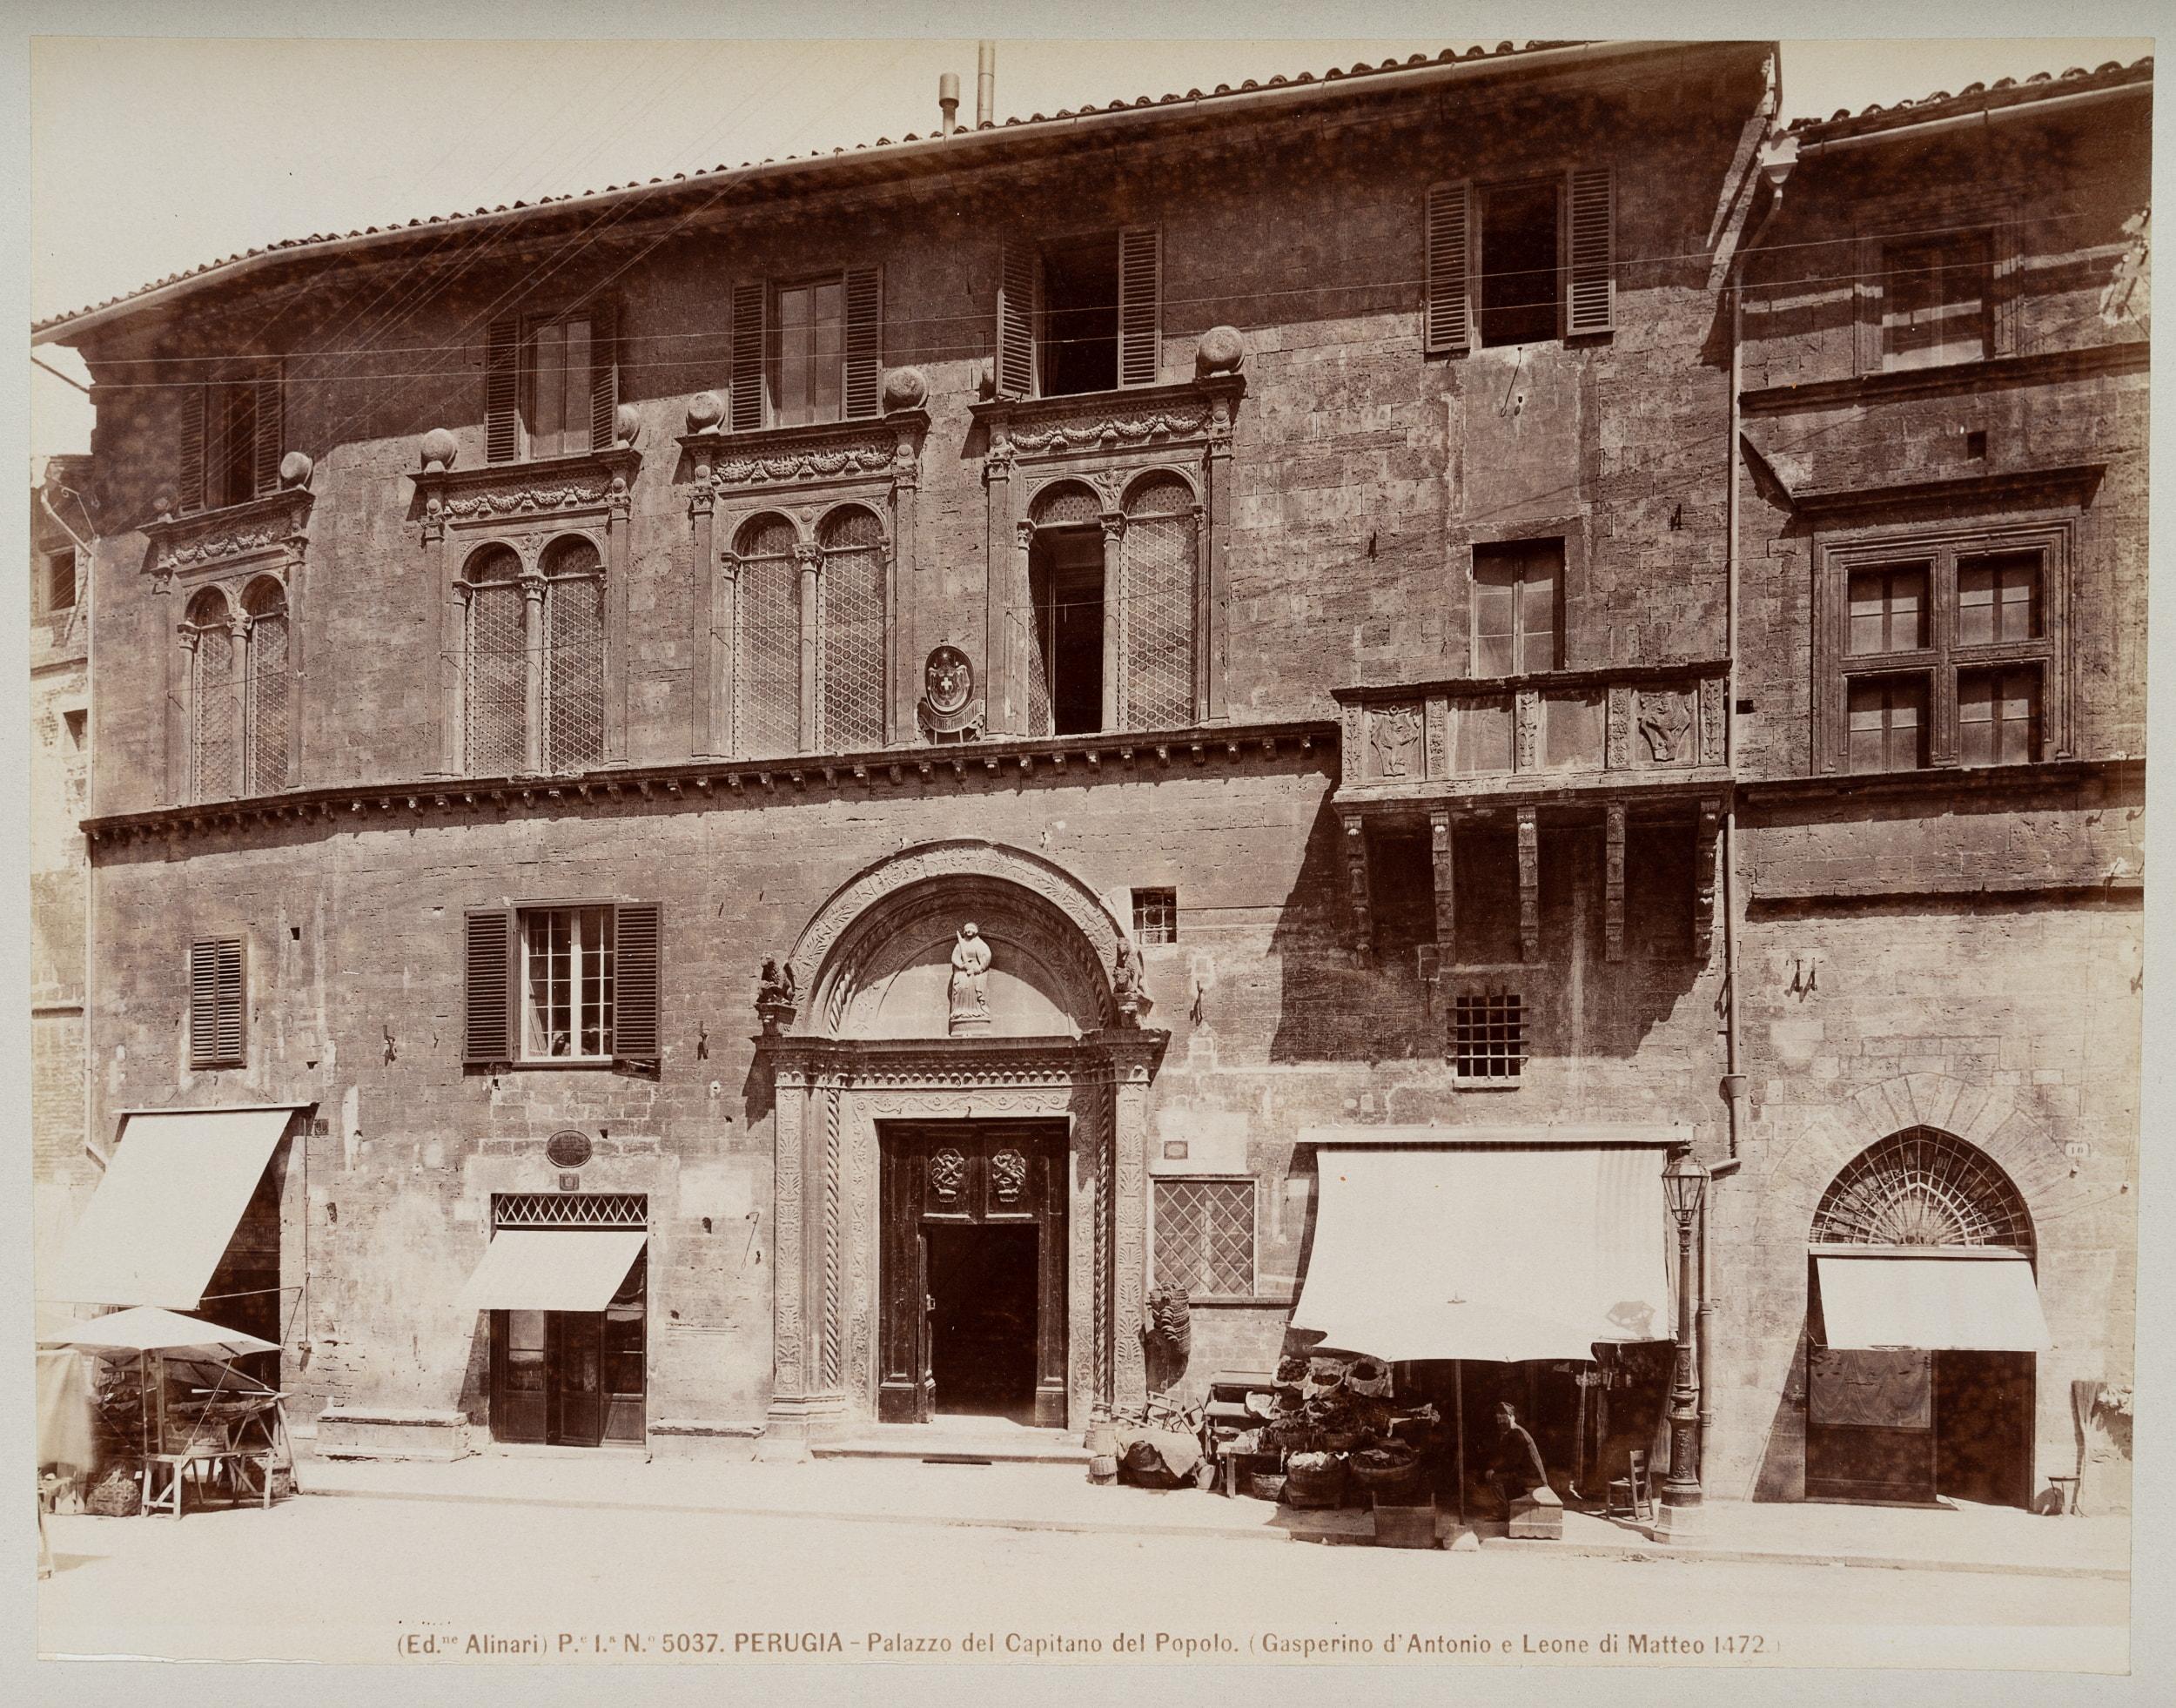 Palazzo del Capitano del Popolo, Perugia - Photograph by Fratelli Alinari